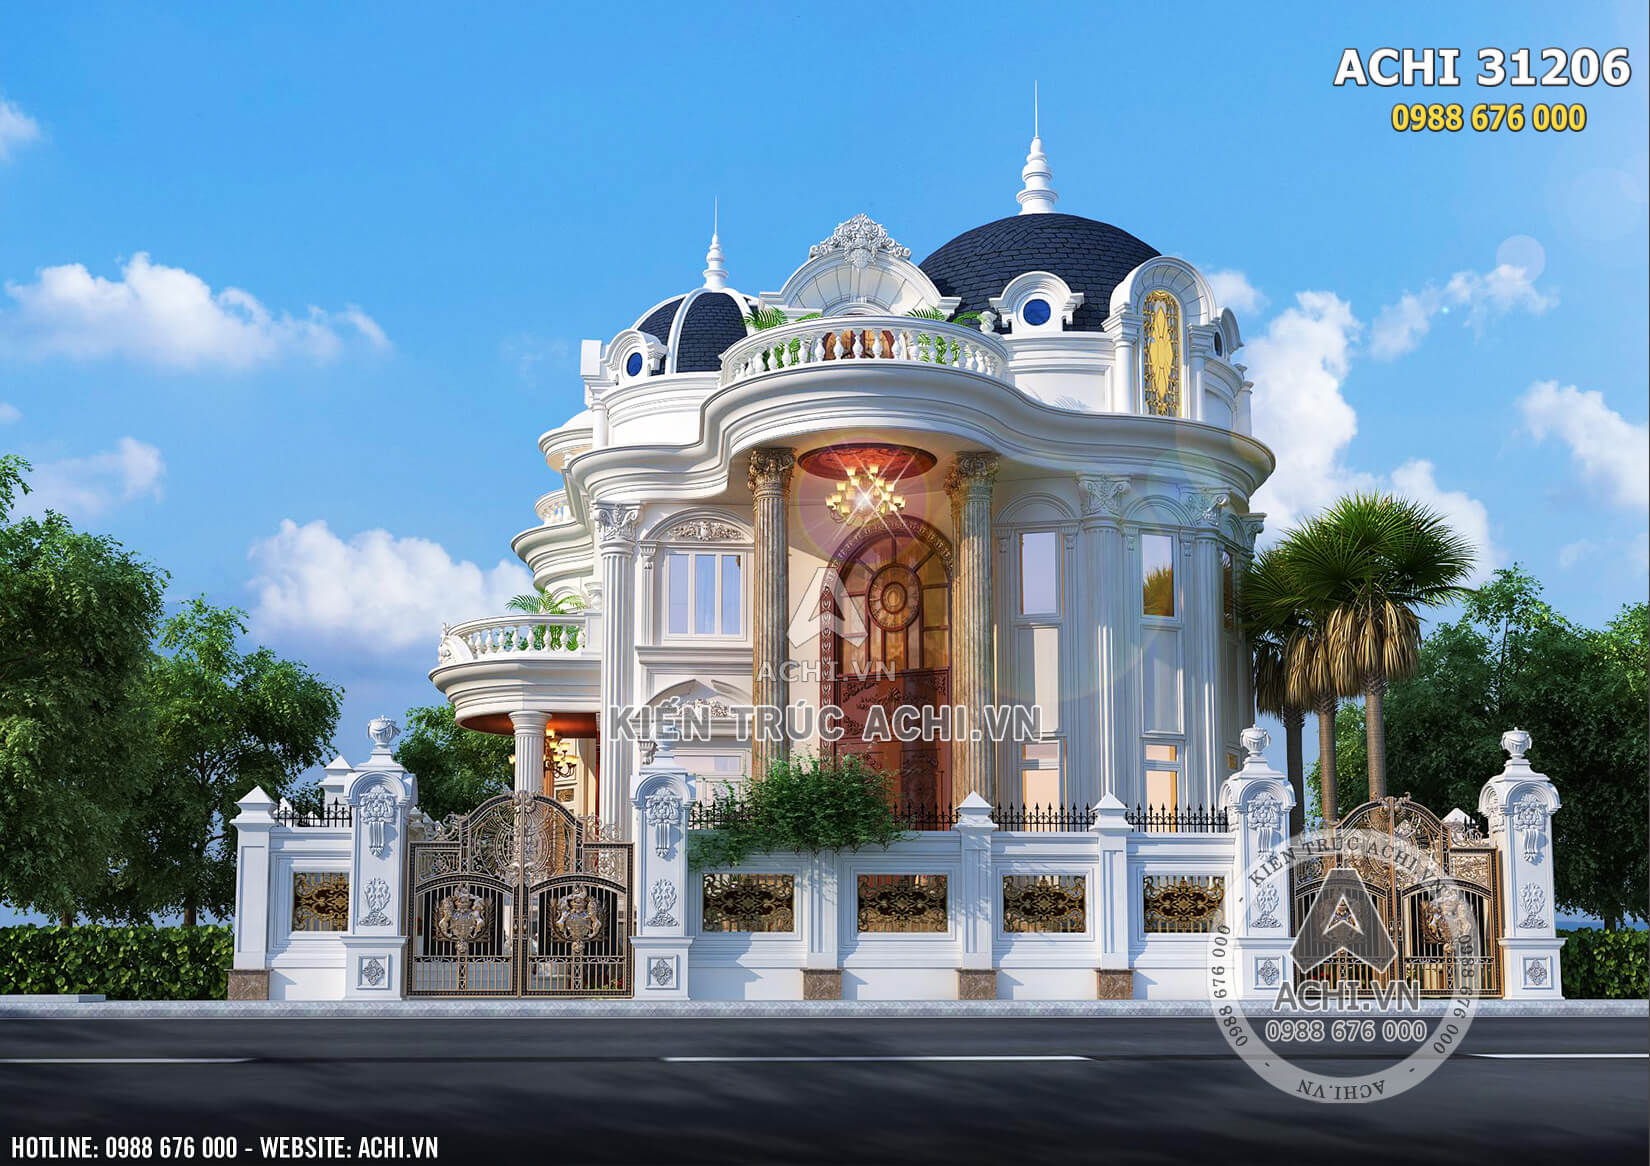 Mẫu thiết kế biệt thự tân cổ điển đẹp 3 tầng tại Sài Gòn - ACHI 31206